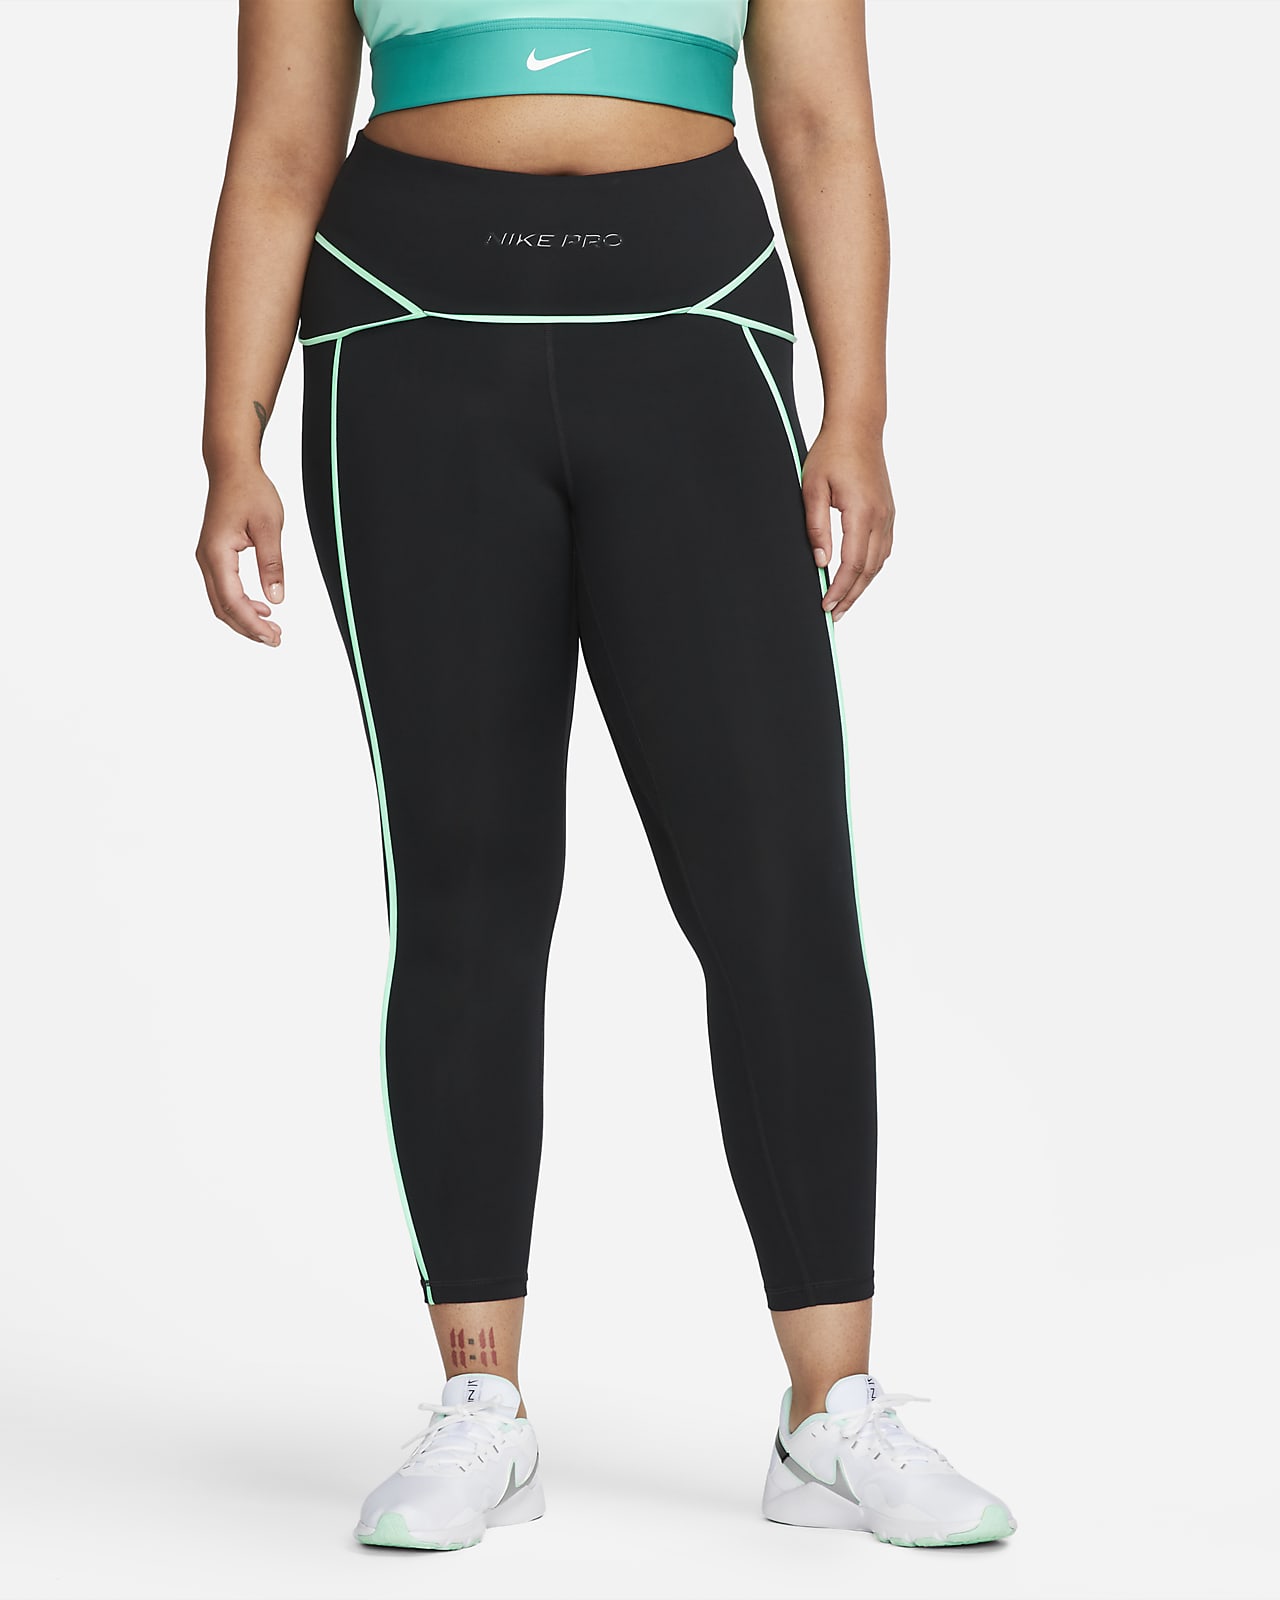 Nike Pro Women's Mid-Rise 7/8 Training Leggings (Plus Size)